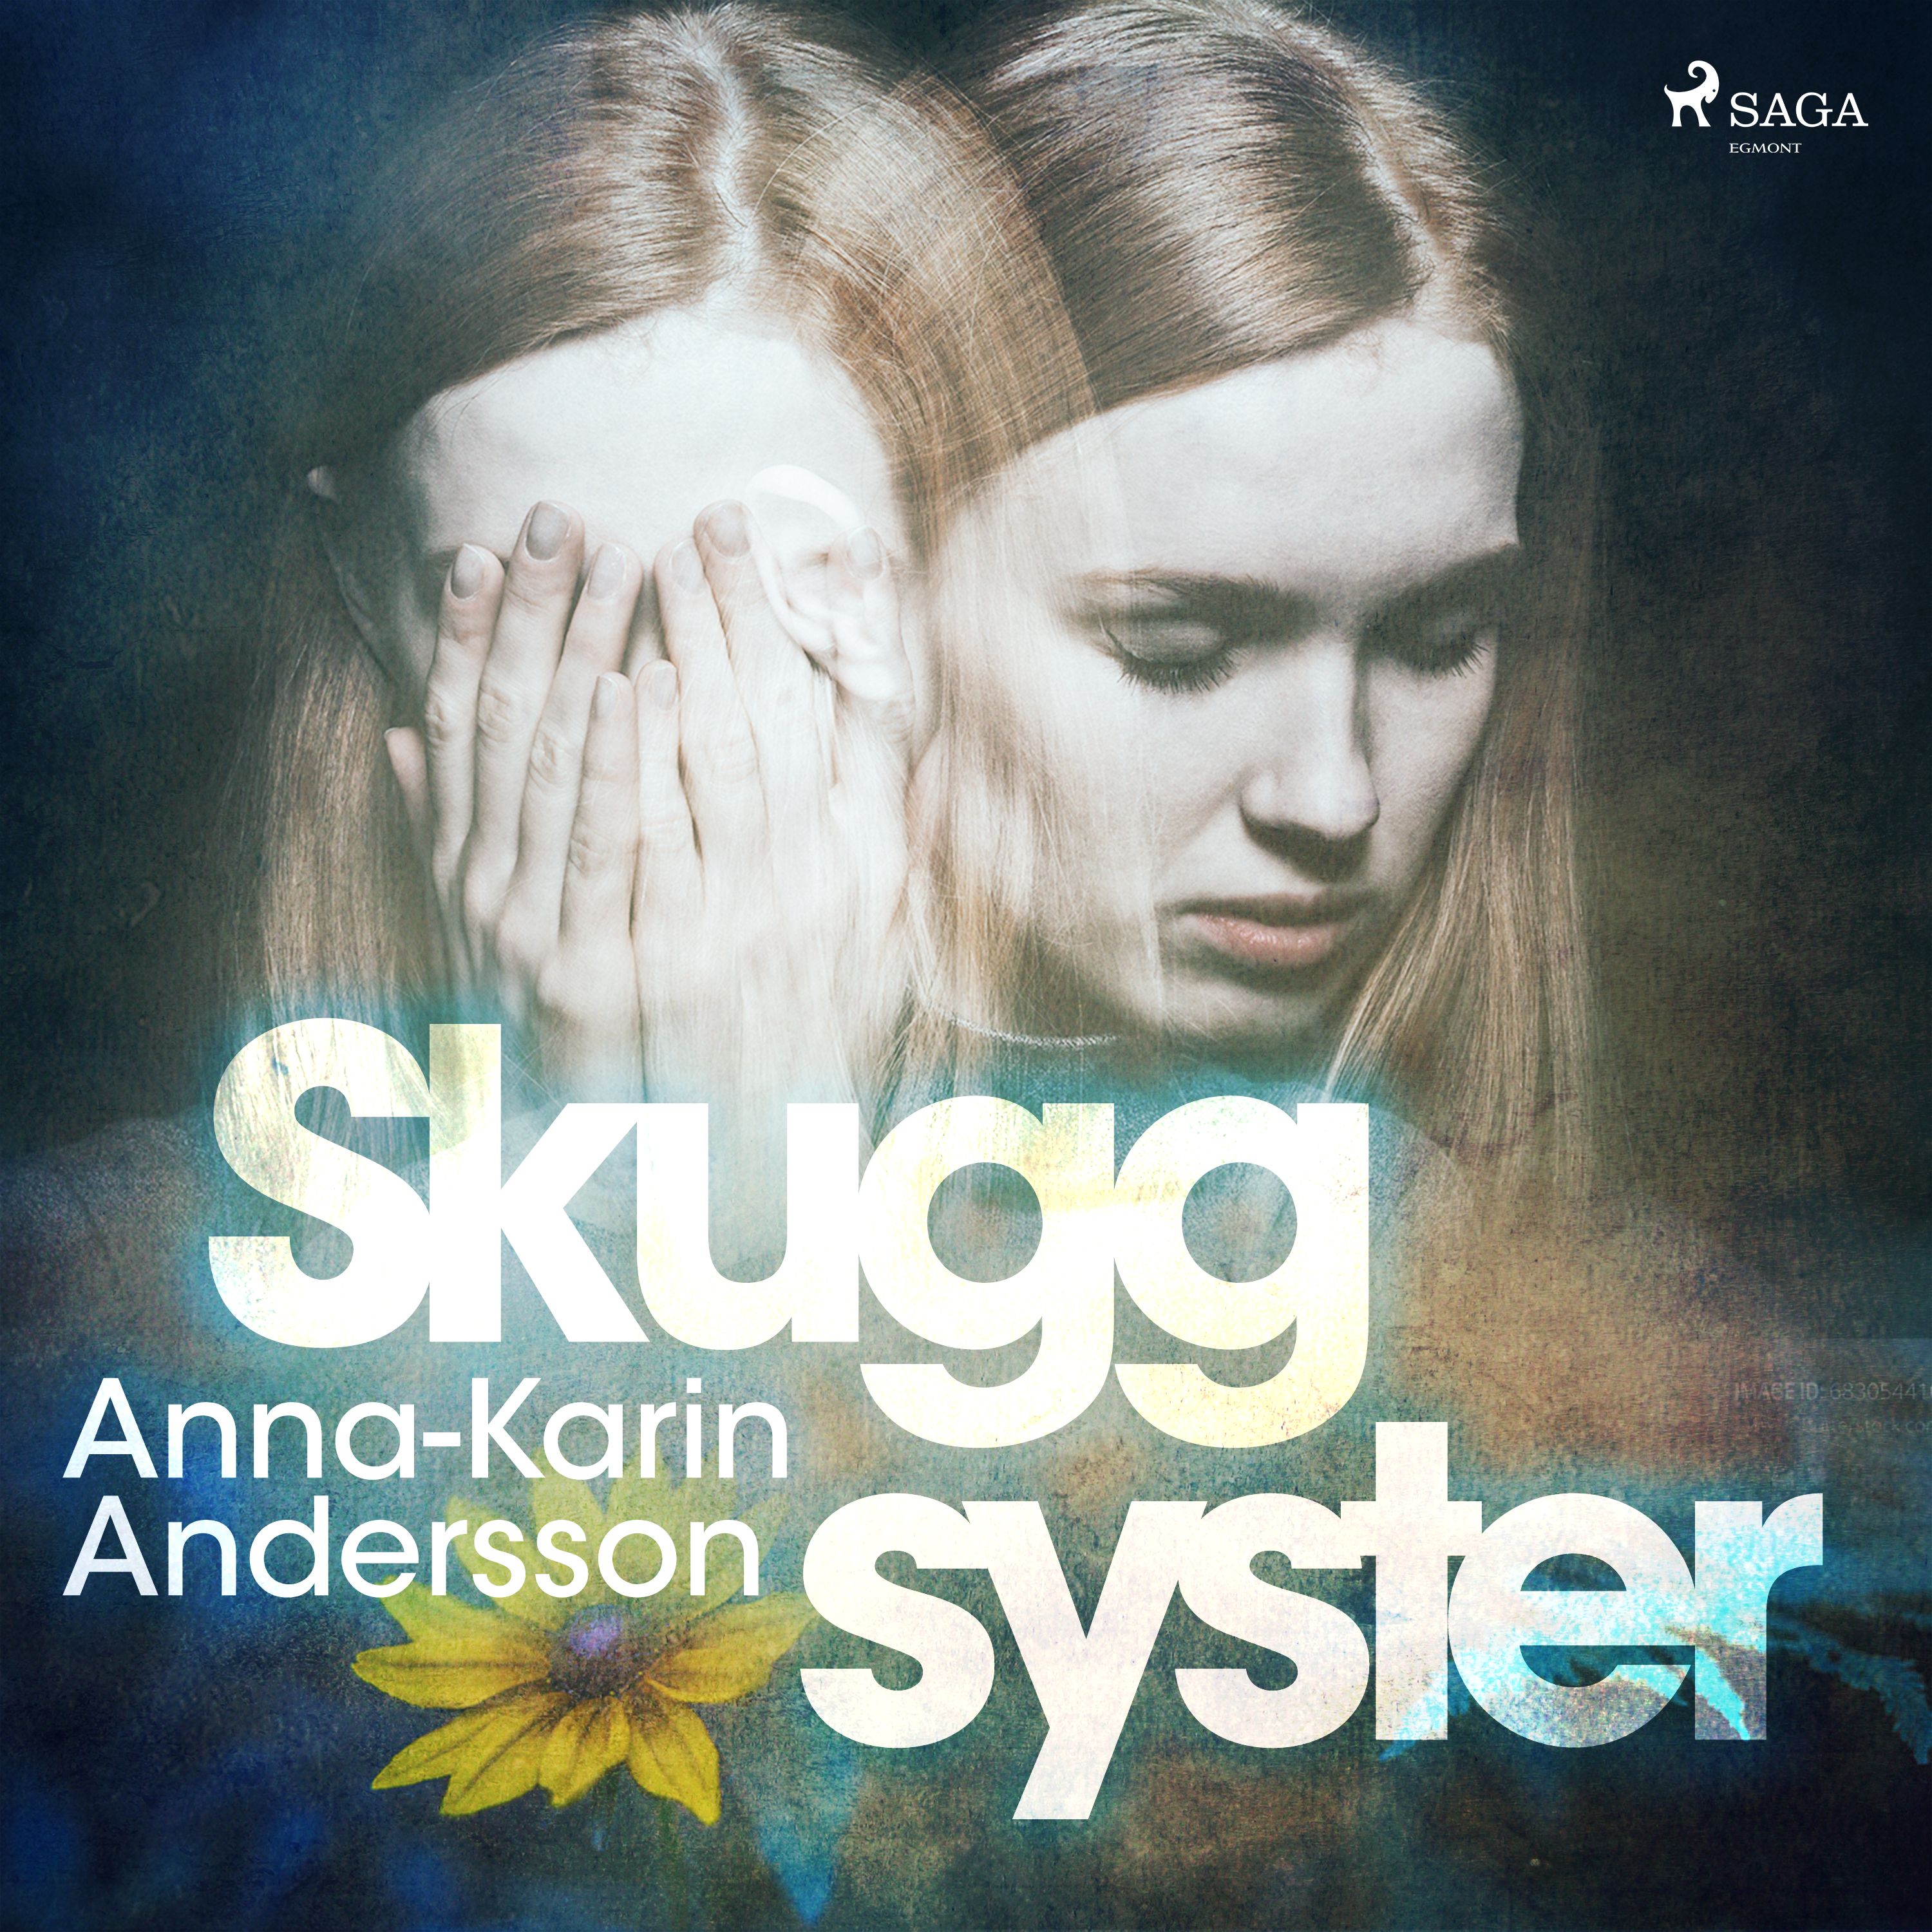 Skuggsyster, ljudbok av Anna-Karin Andersson